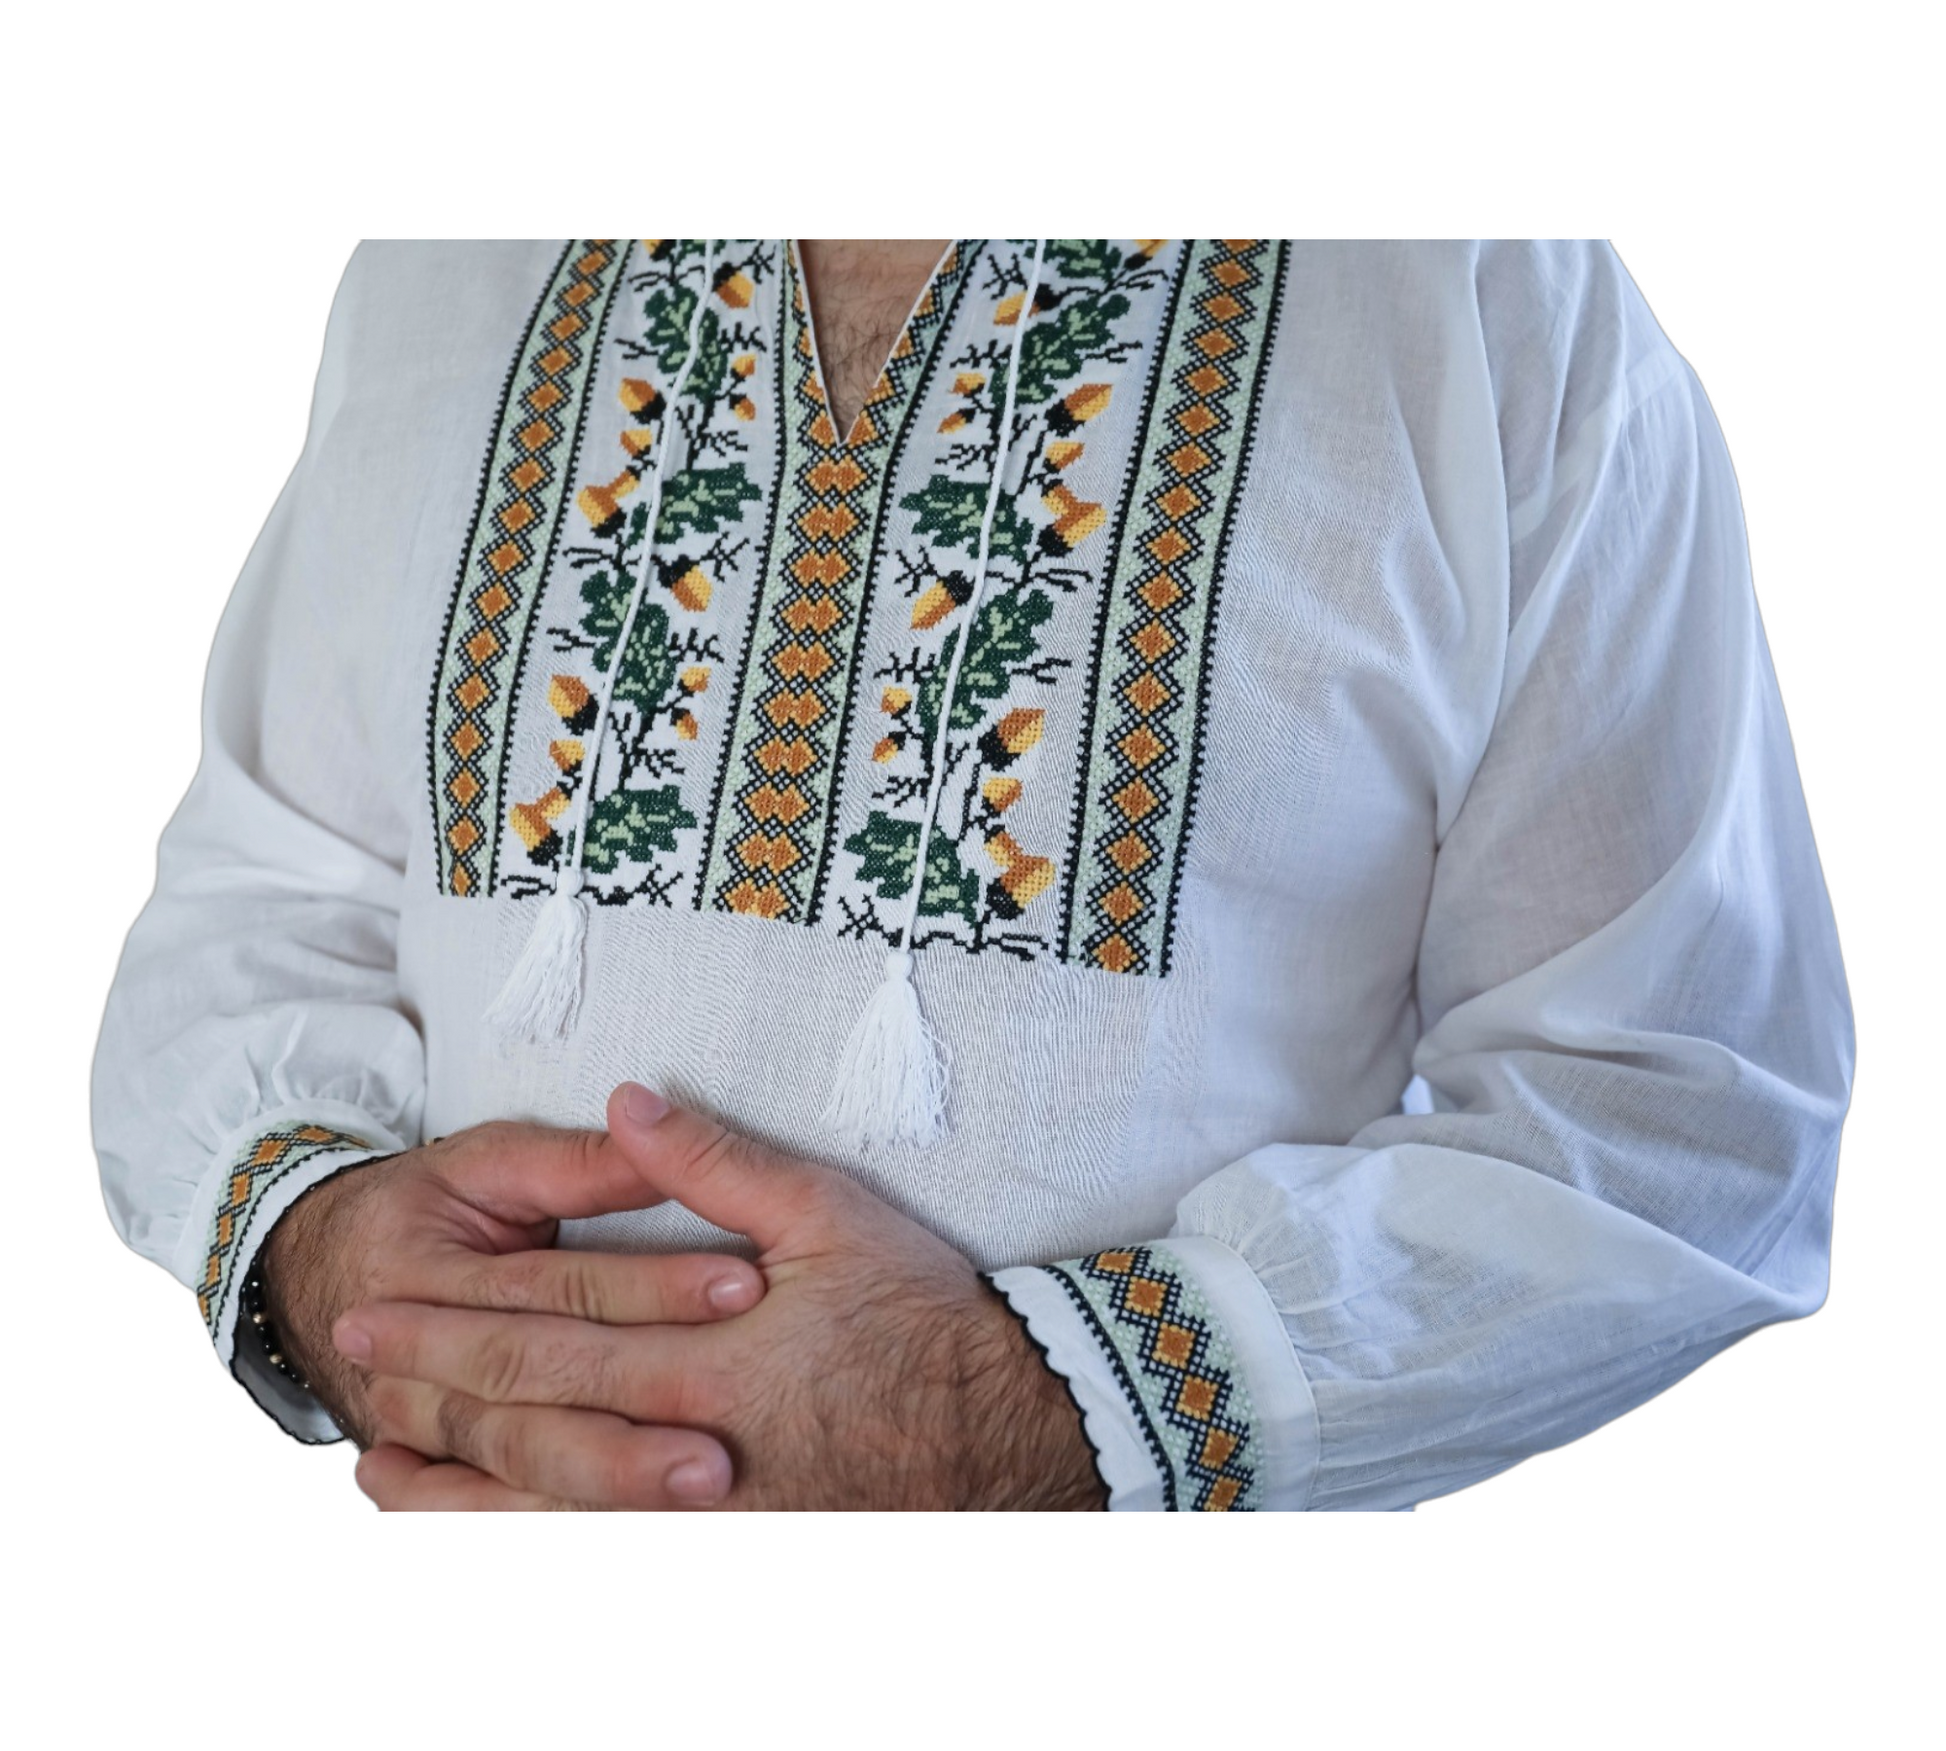 Blouse Traditionnelle Roumaine Brodée À La Main Homme